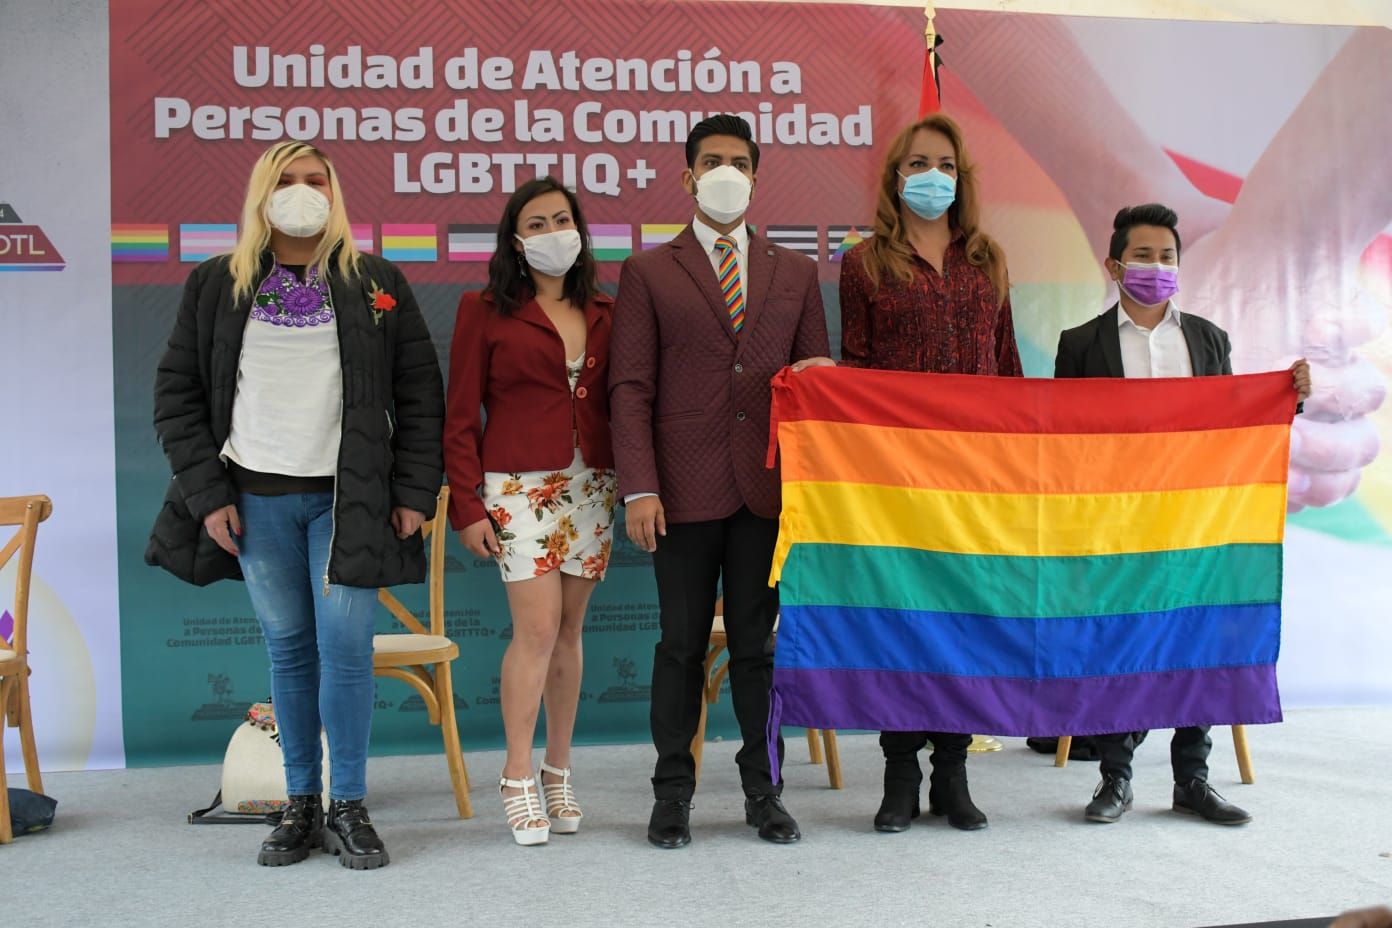 Por Primera vez en la historia de Neza se crea la unidad de atención a personas de la comunidad Lgbtttiq+, única en su tipo en el Estado de México
 
